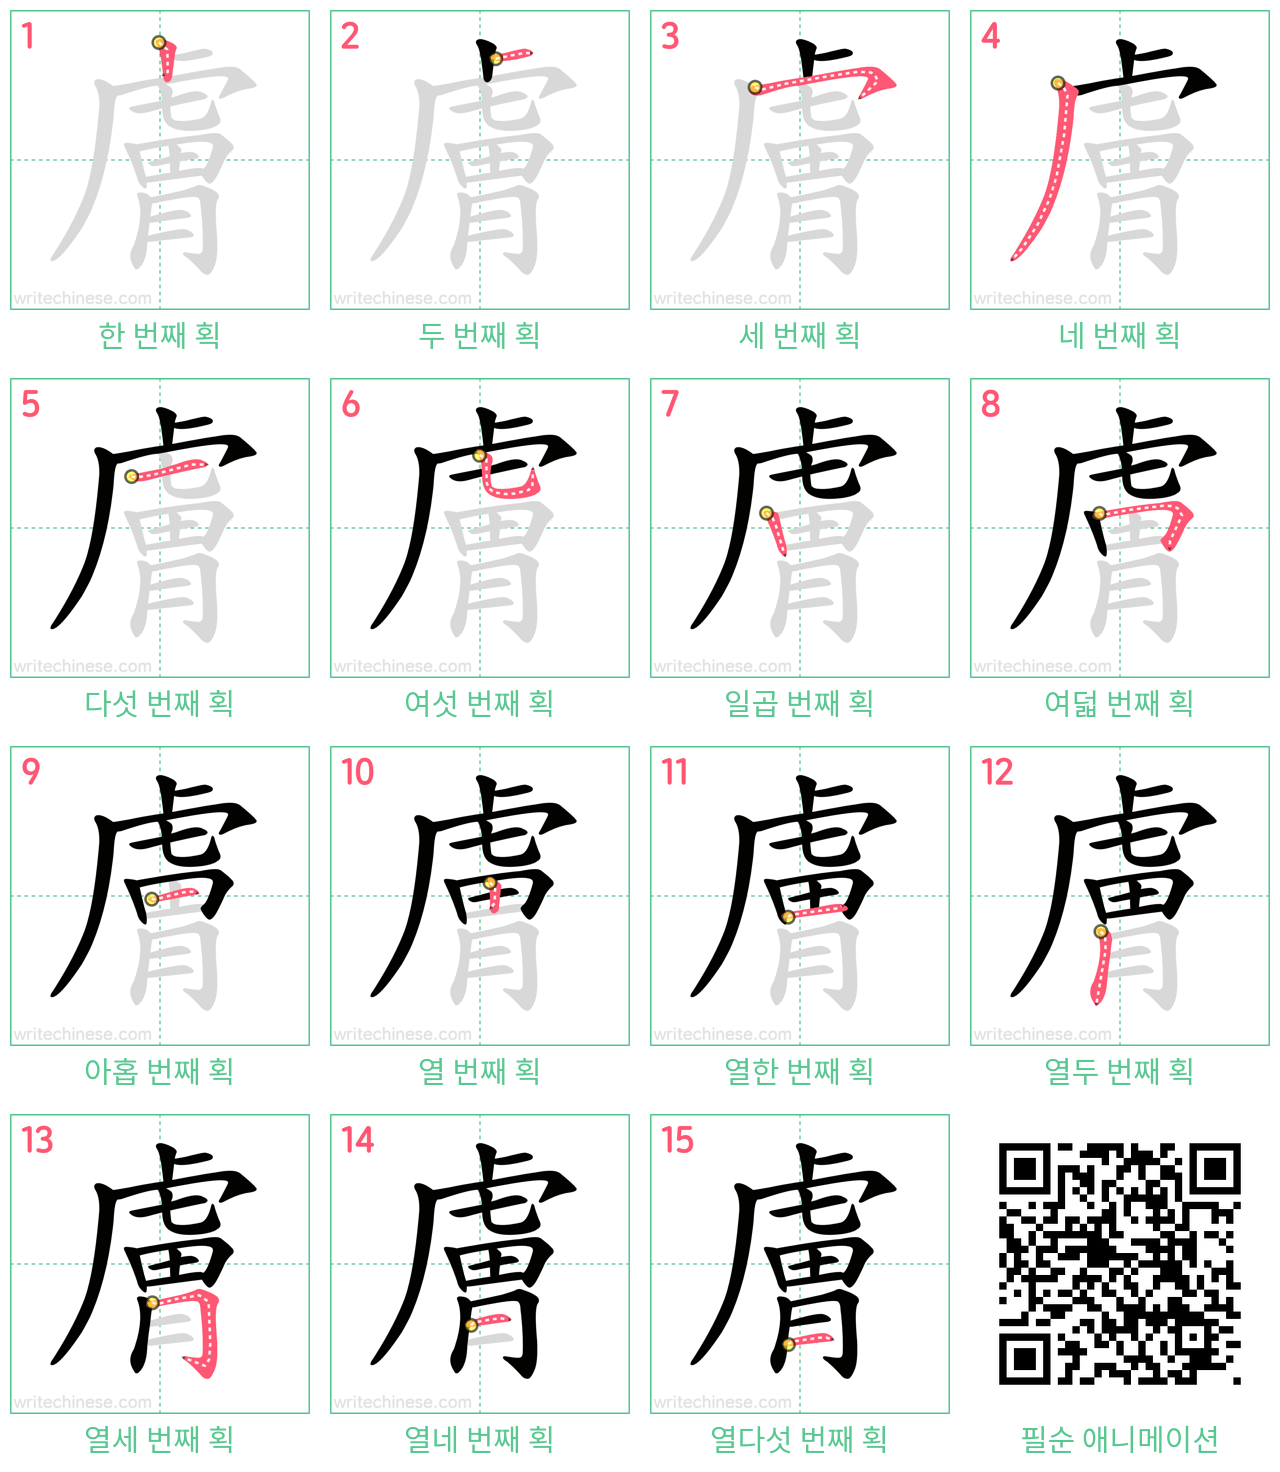 膚 step-by-step stroke order diagrams